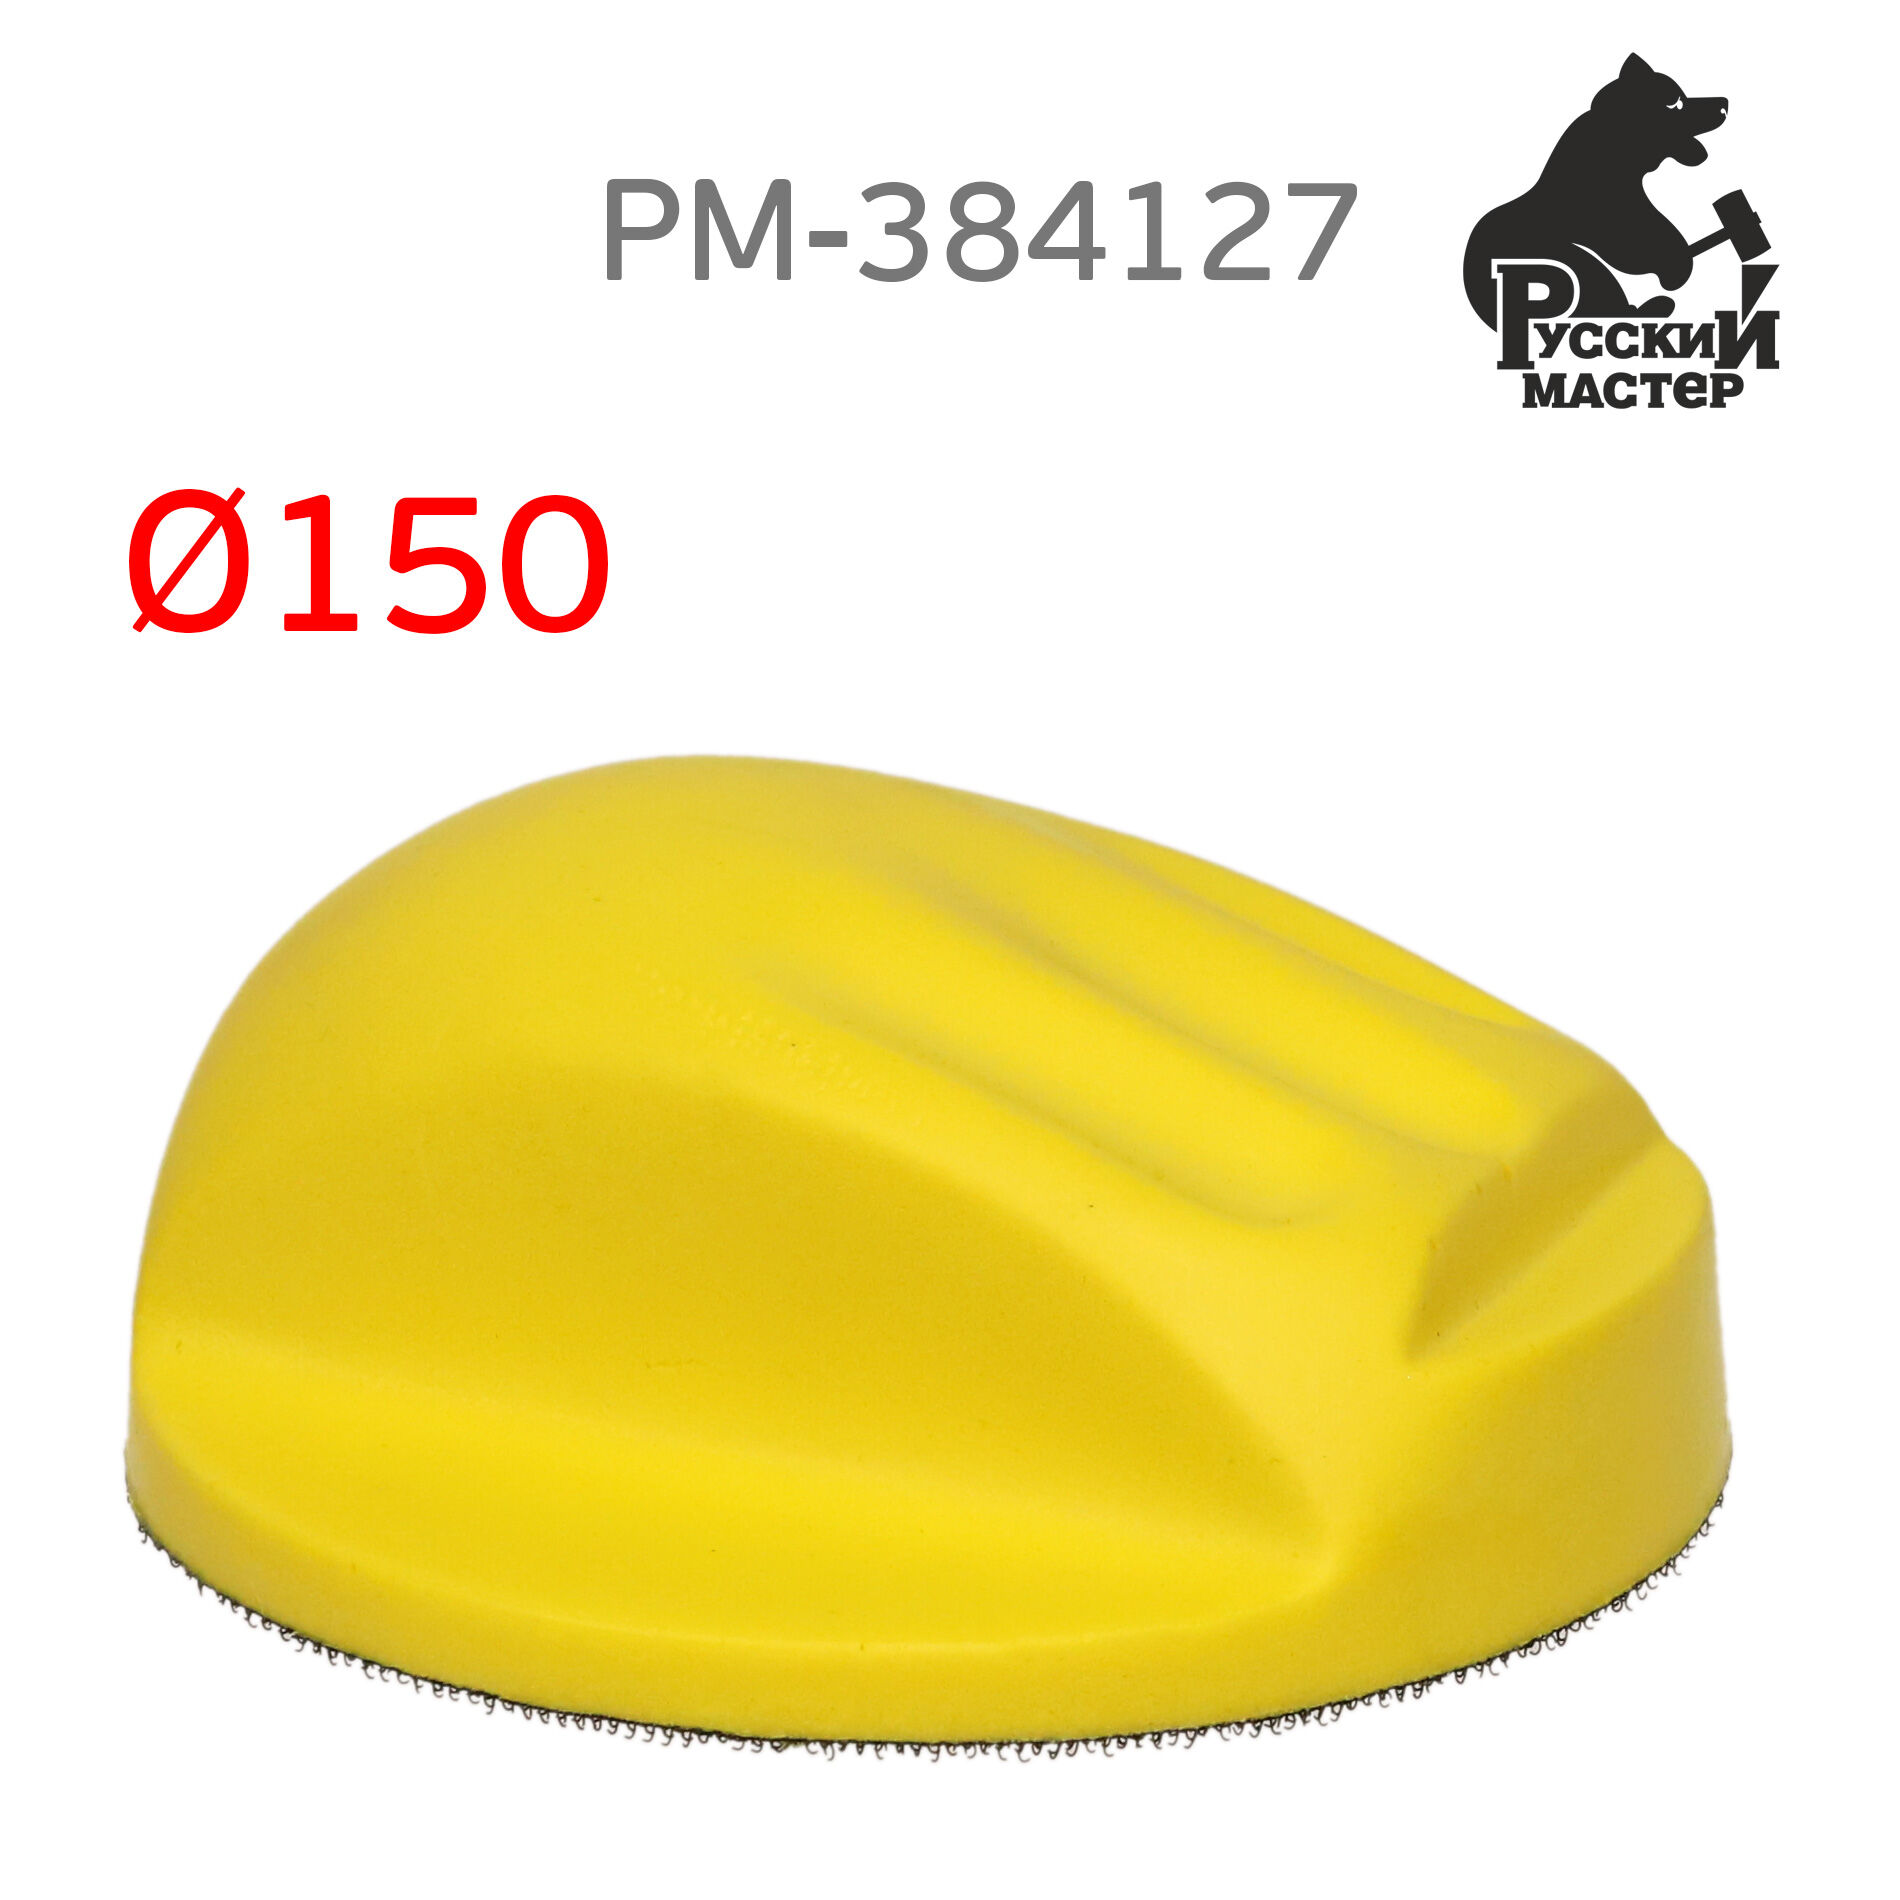 Шлифблок с липучкой РМ-384127 для шлифовальных кругов (мягкий)